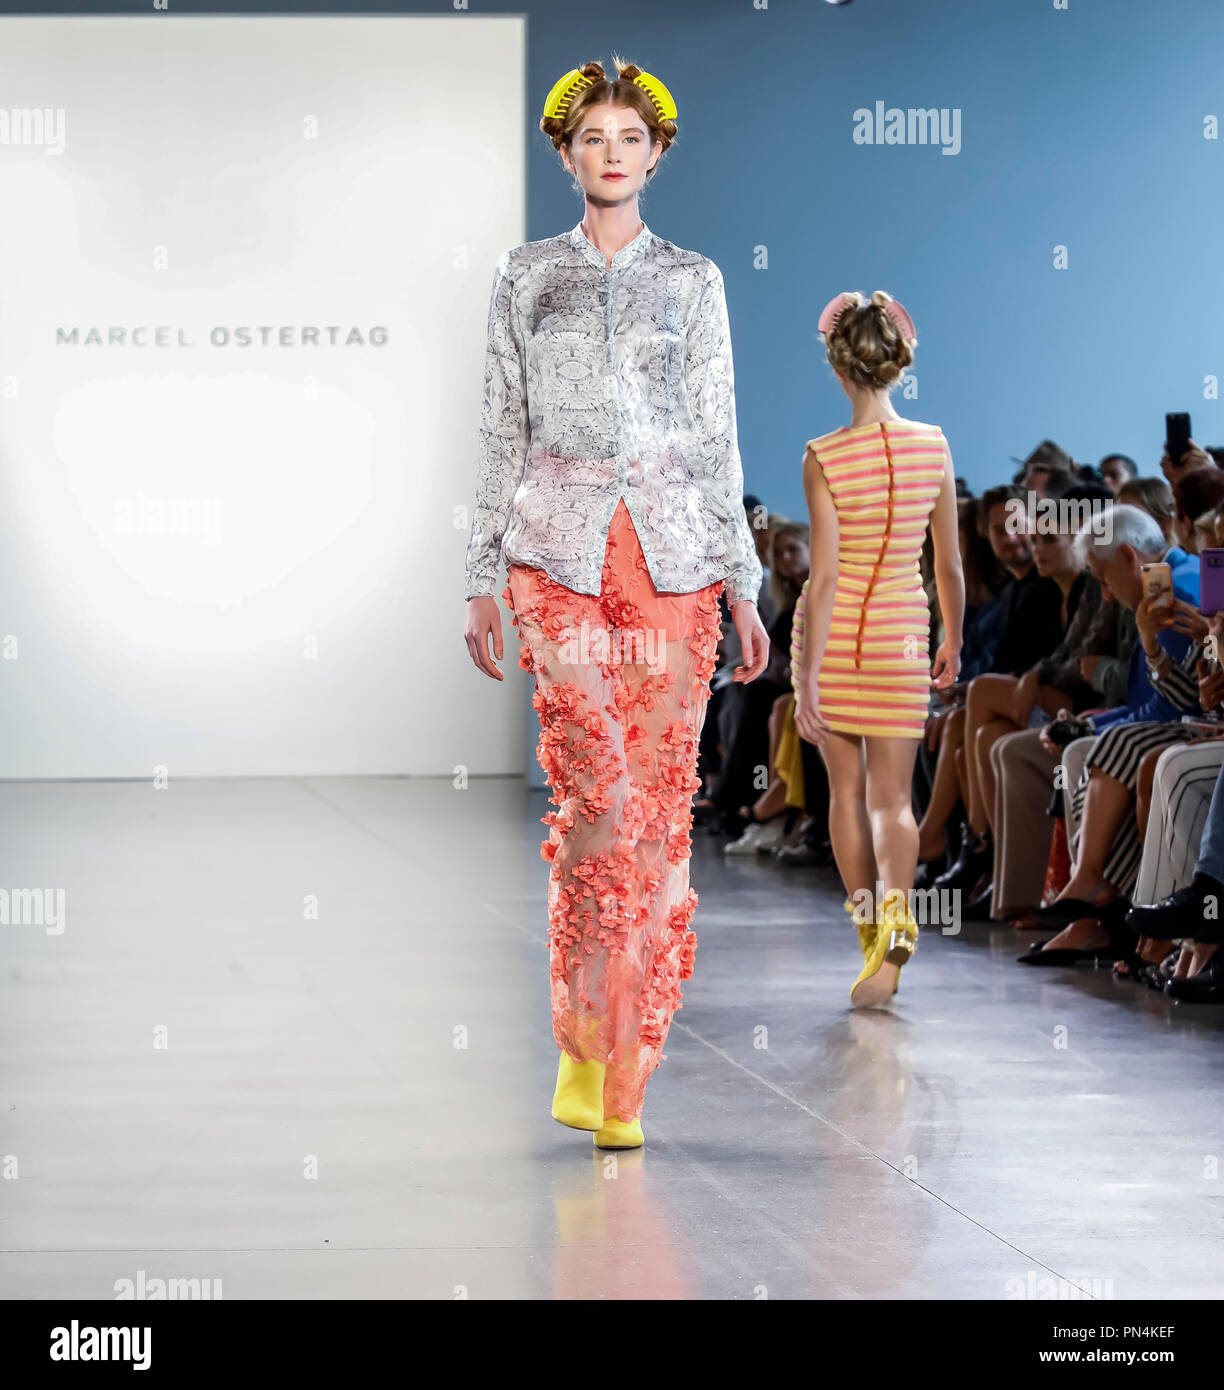 New York, NY, Stati Uniti d'America - 12 Settembre 2018: un modello passeggiate sulla pista di presentare Marcel Ostertag Primavera/Estate 2019 collezione durante la settimana della moda di New York a Foto Stock